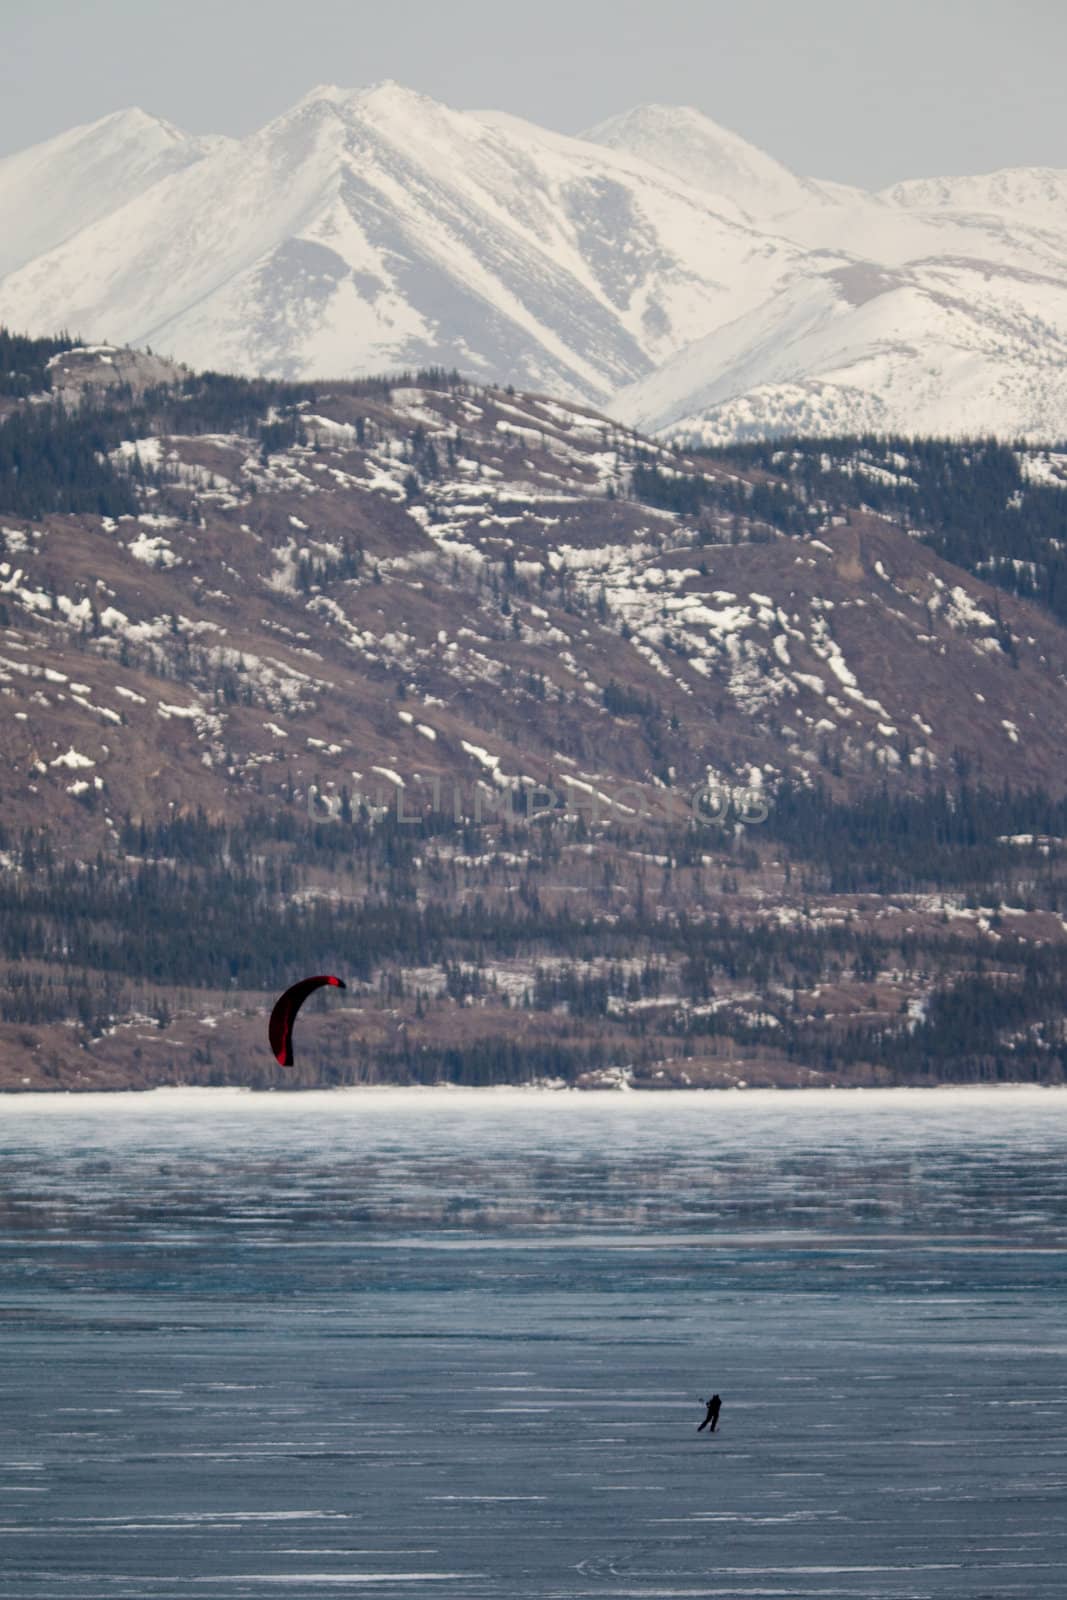 Ski-Kiting on frozen Lake by PiLens